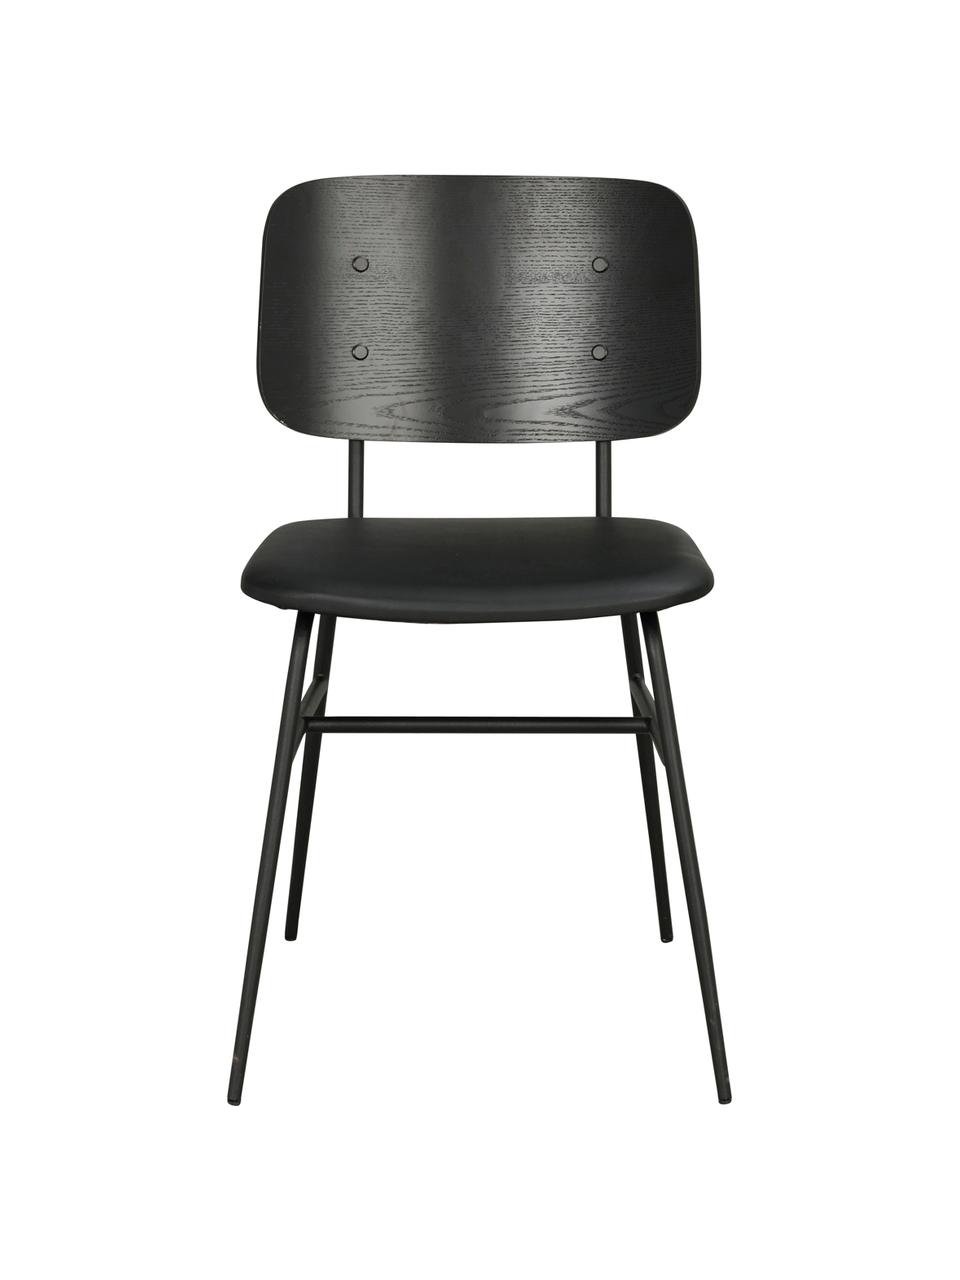 Drevená čalúnená stolička Brent, Matná čierna, Š 47 x H 57 cm